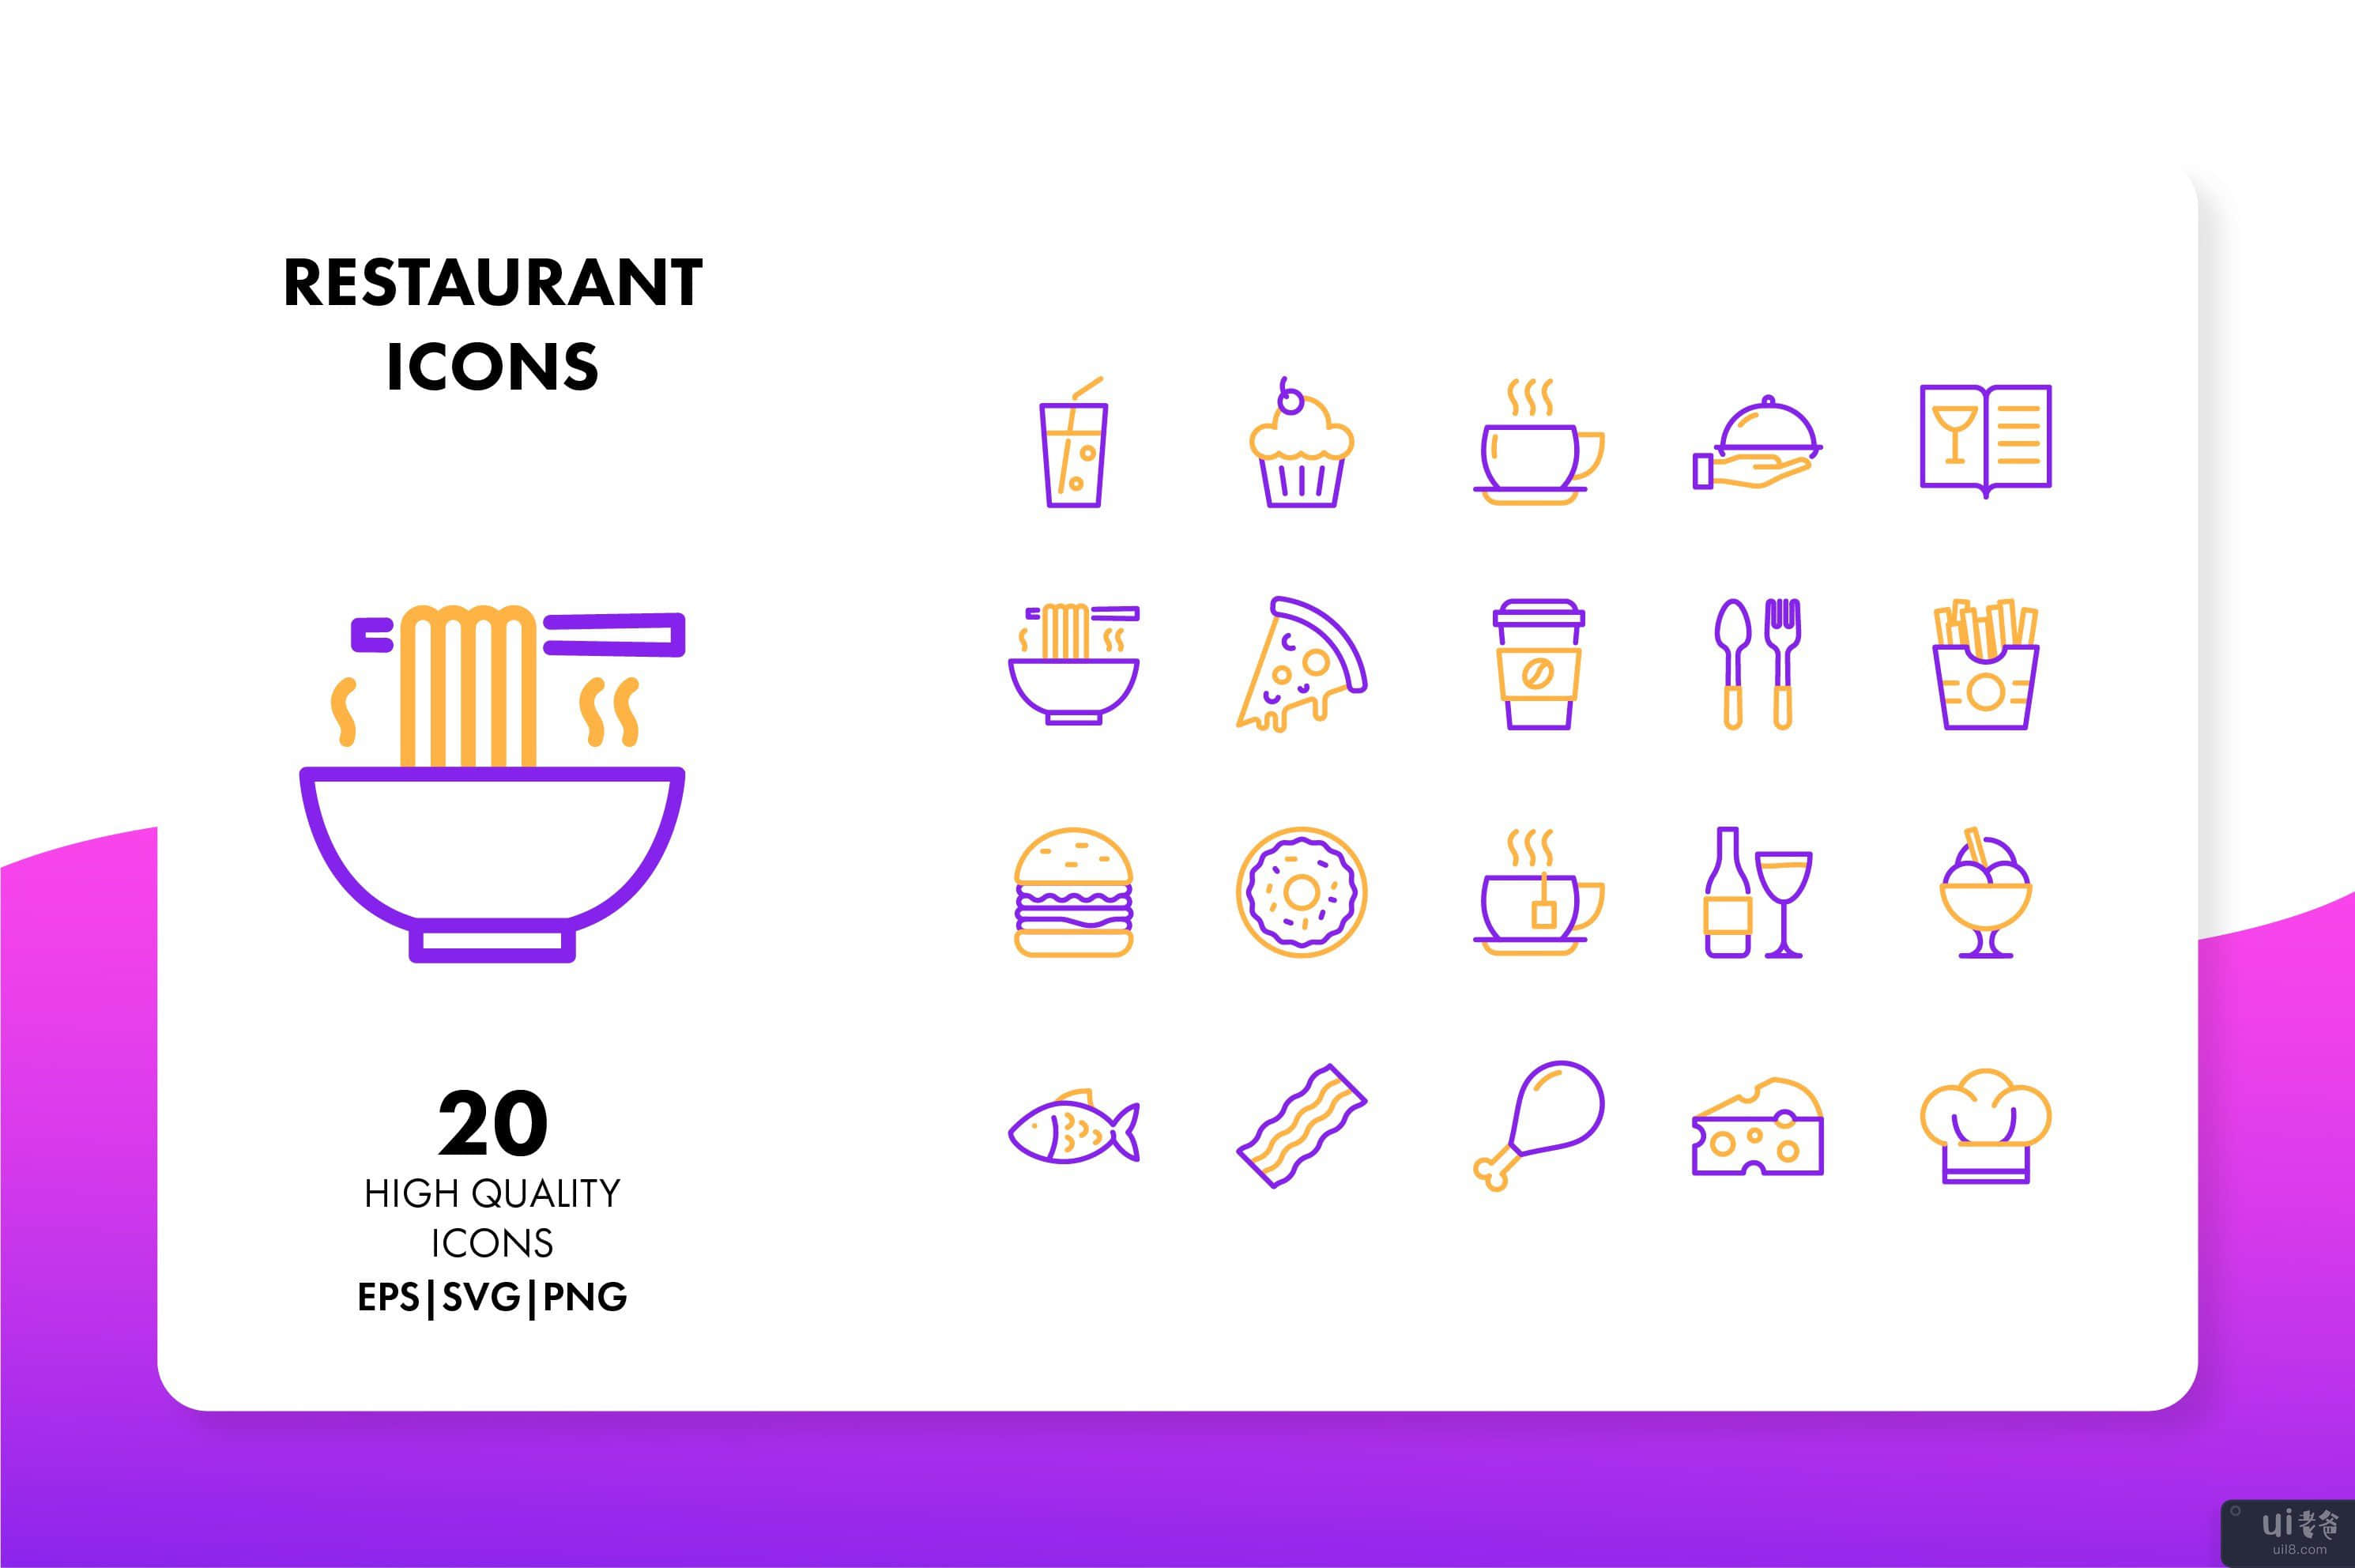 餐厅图标(Restaurant Icons)插图